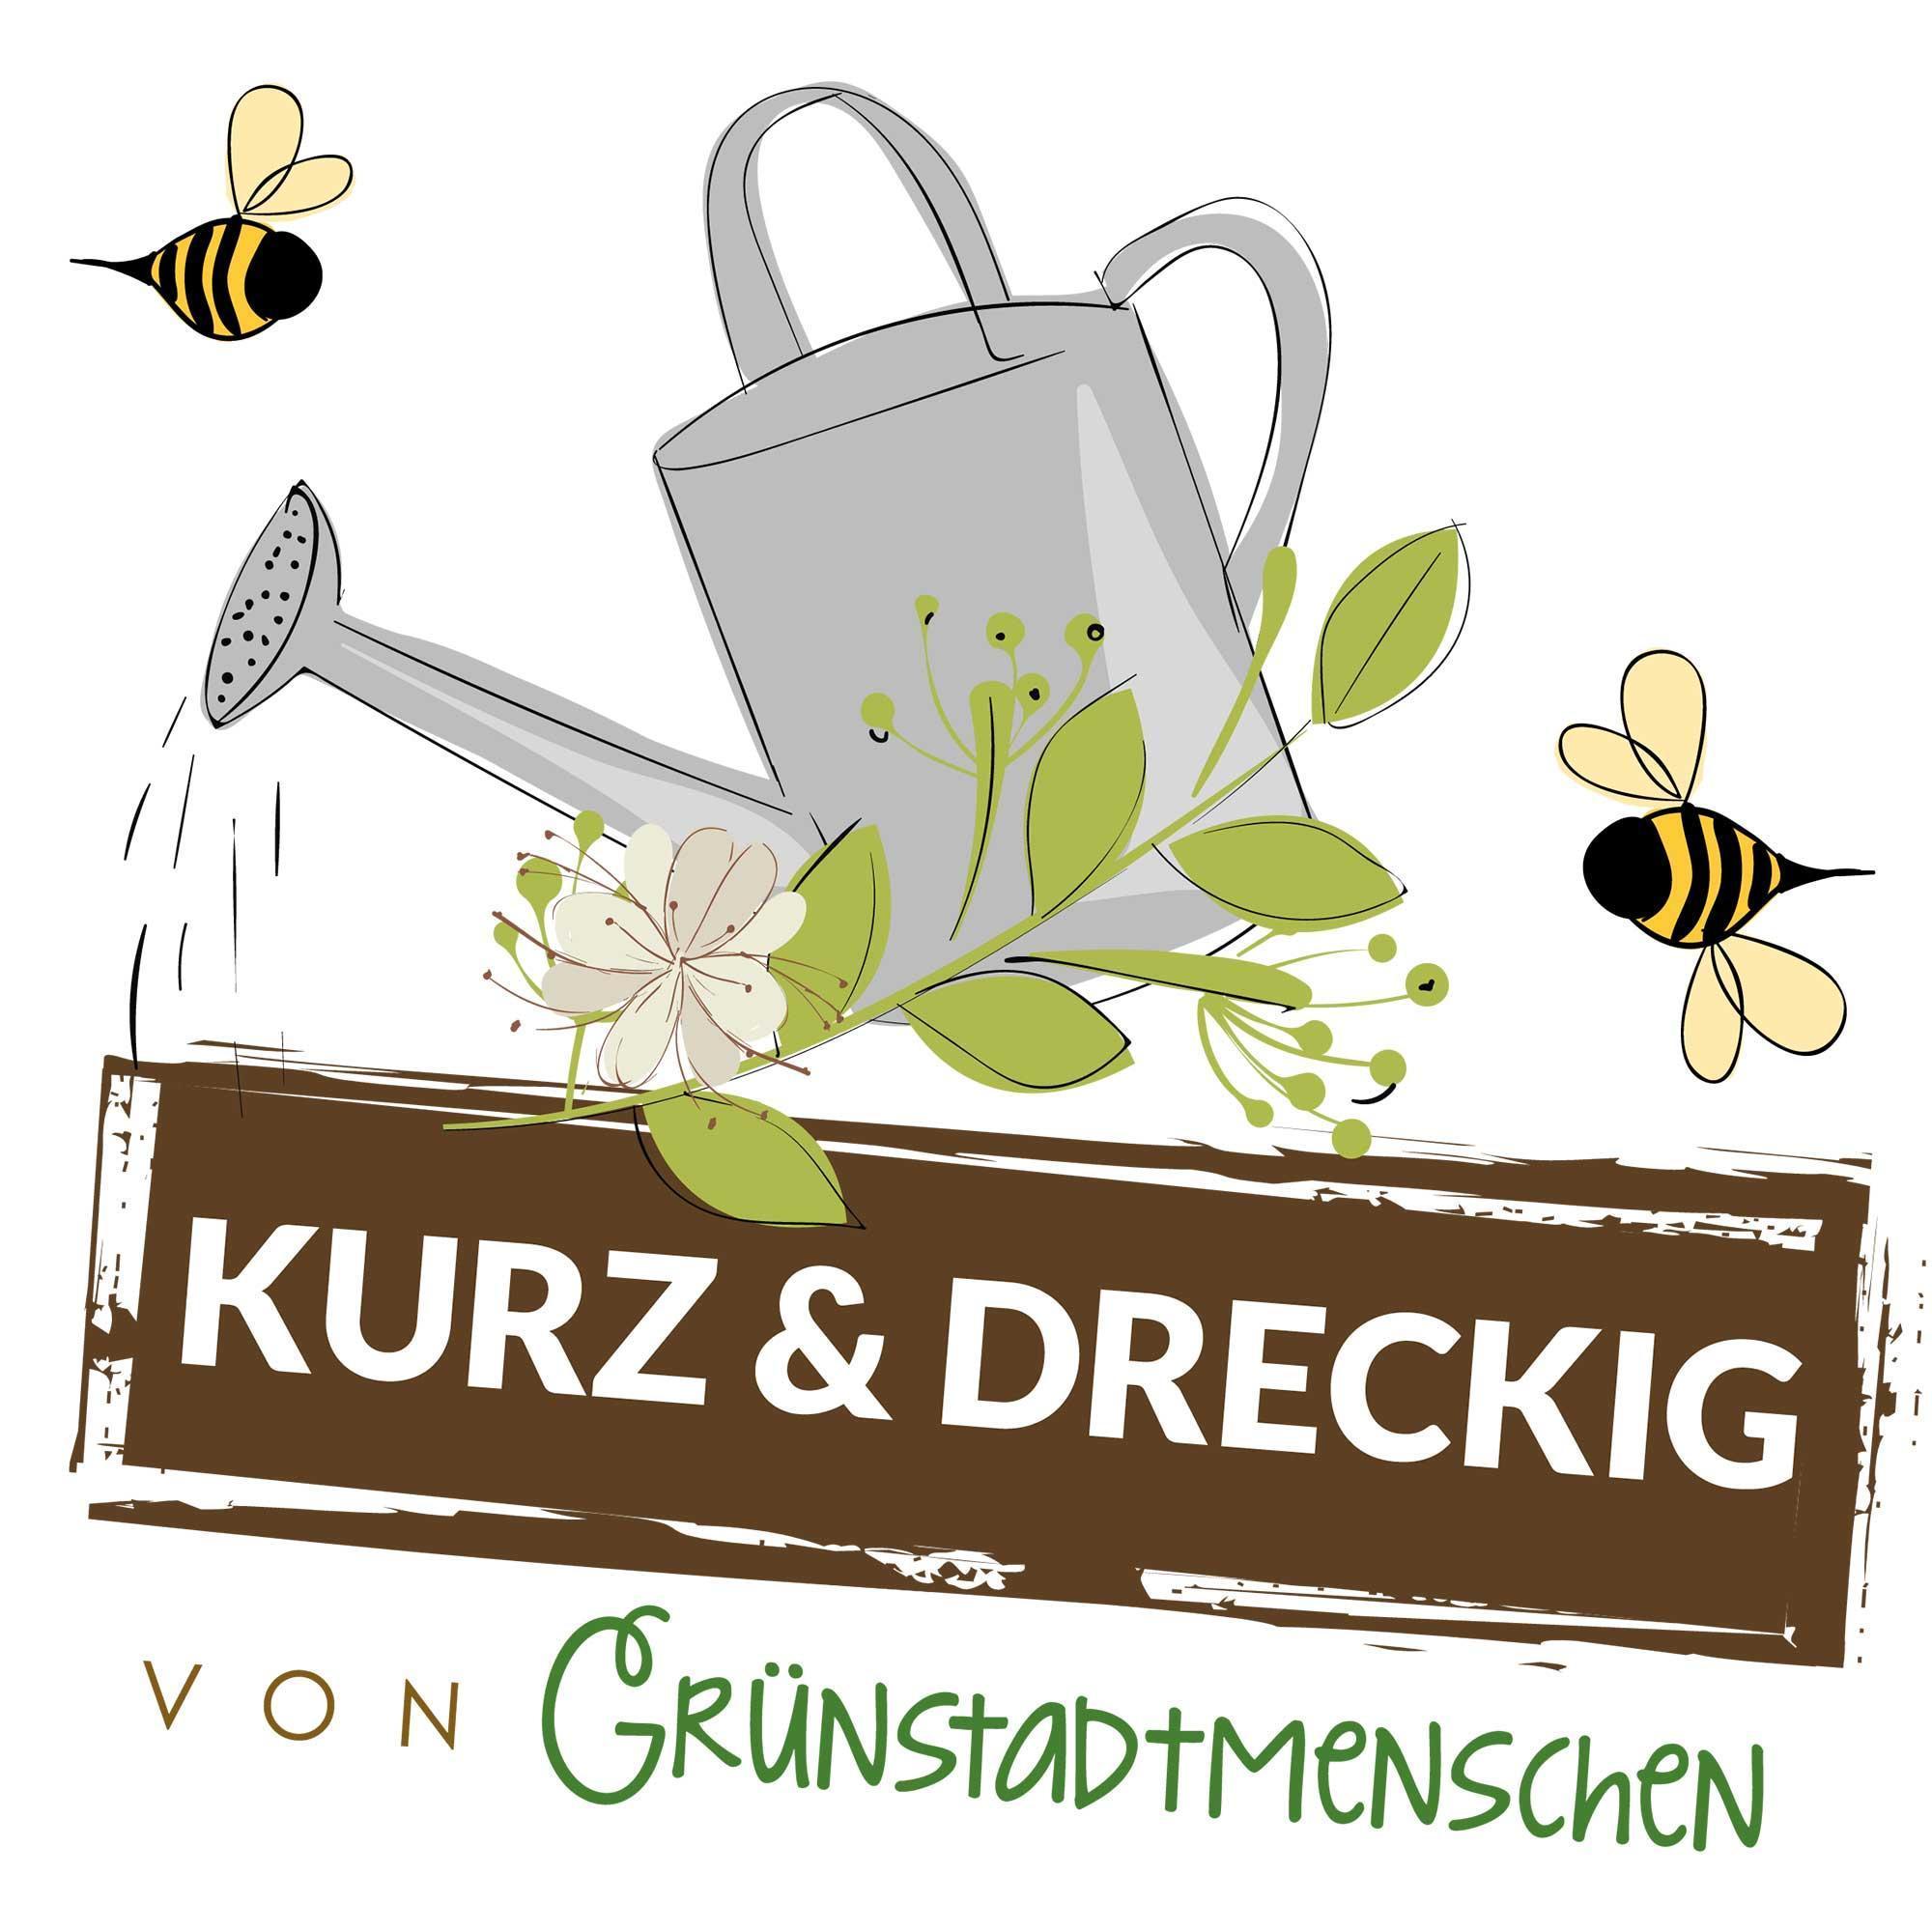 #117 Kurz & dreckig: Karinas Gartentipps für den April